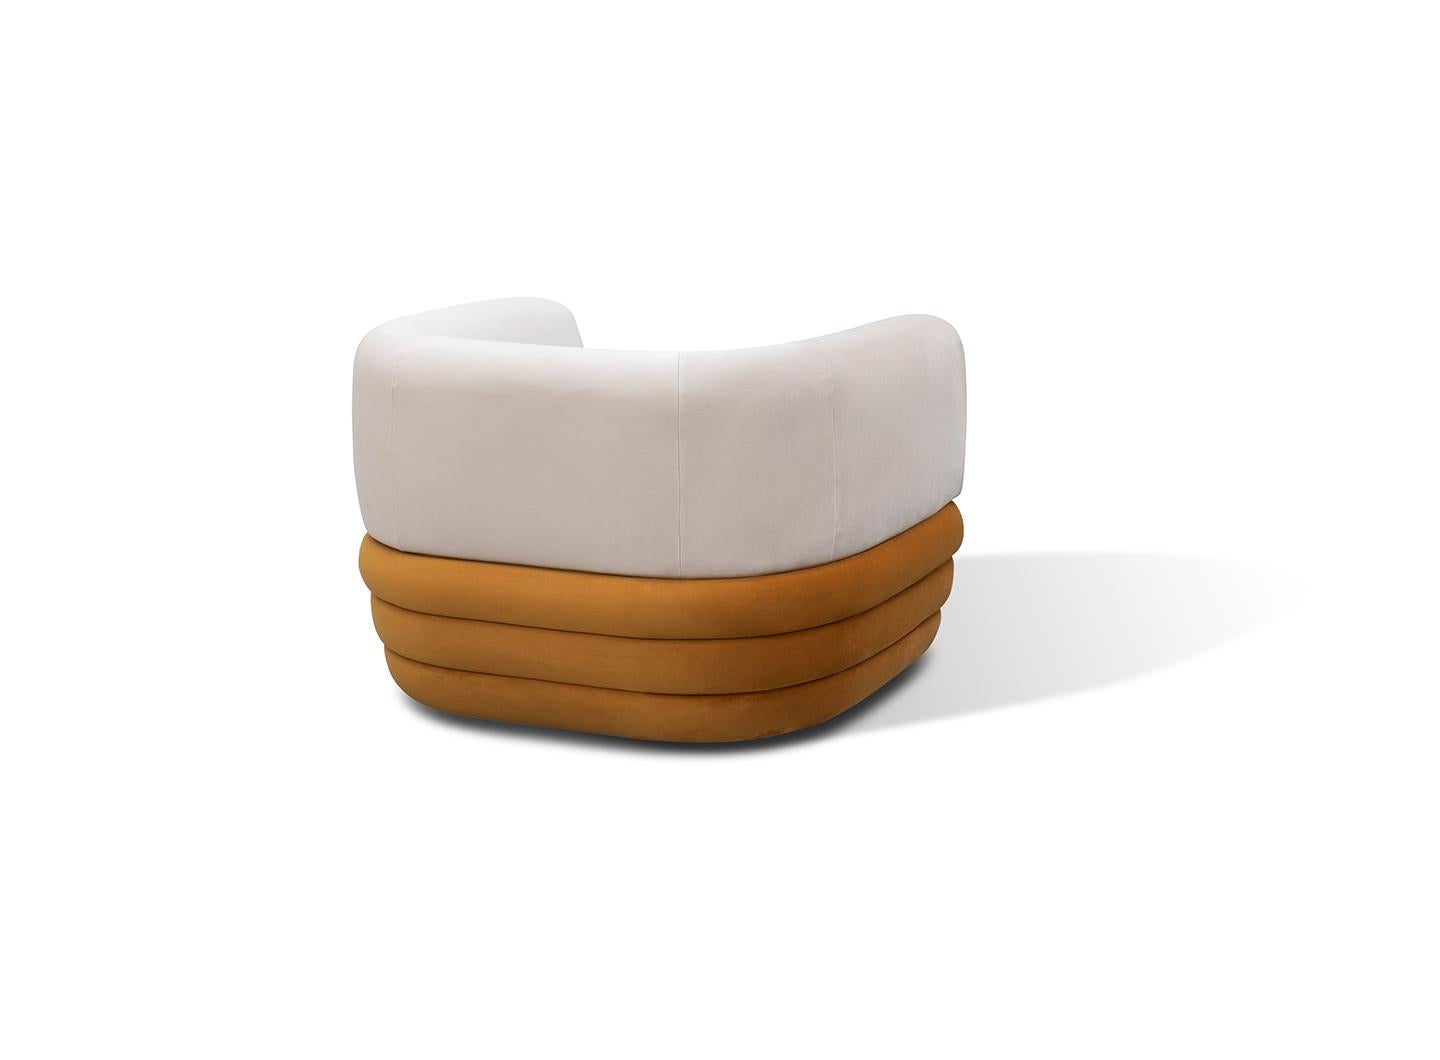 Sessel gekennzeichnet durch eine weiche Rückenlehne perfekt geformt, dass Sie umarmt und erhöht den Komfort.
Die Basis wird durch drei separate Teile bereichert, die um den Sessel herumgehen und ihn zu einem einzigartigen Stück machen, das stilvoll